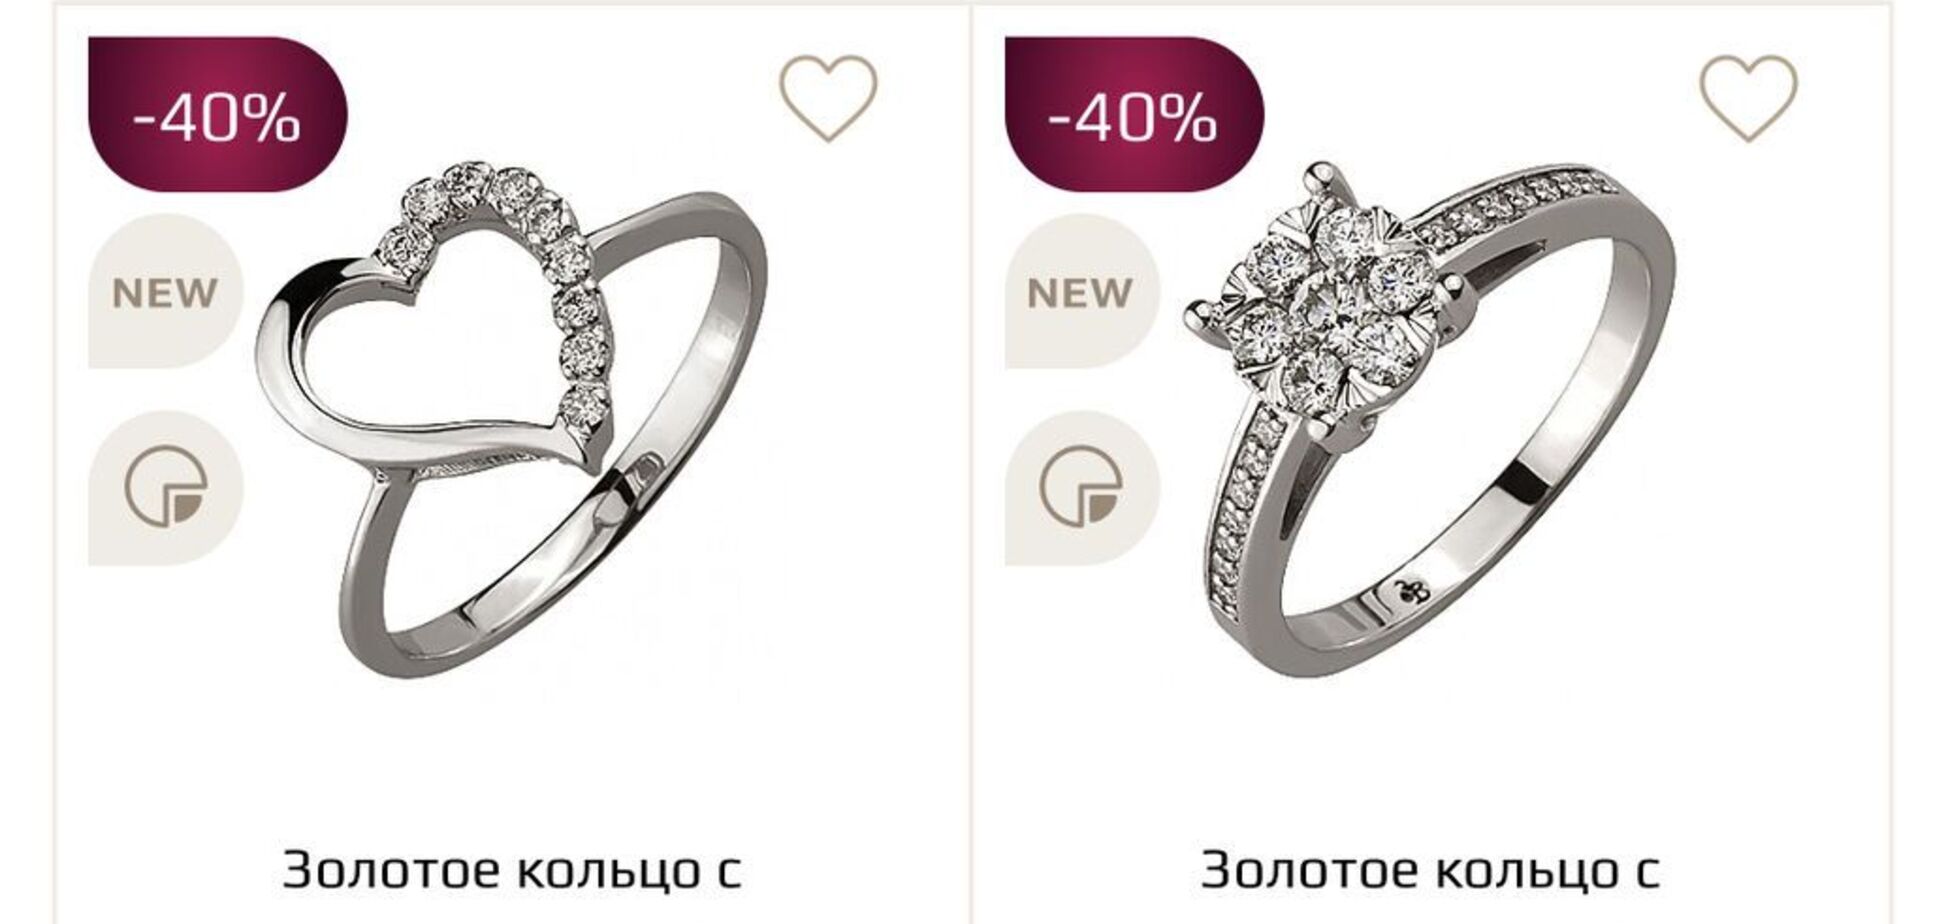 Купить кольцо и не прогадать: неочевидные критерии выбора